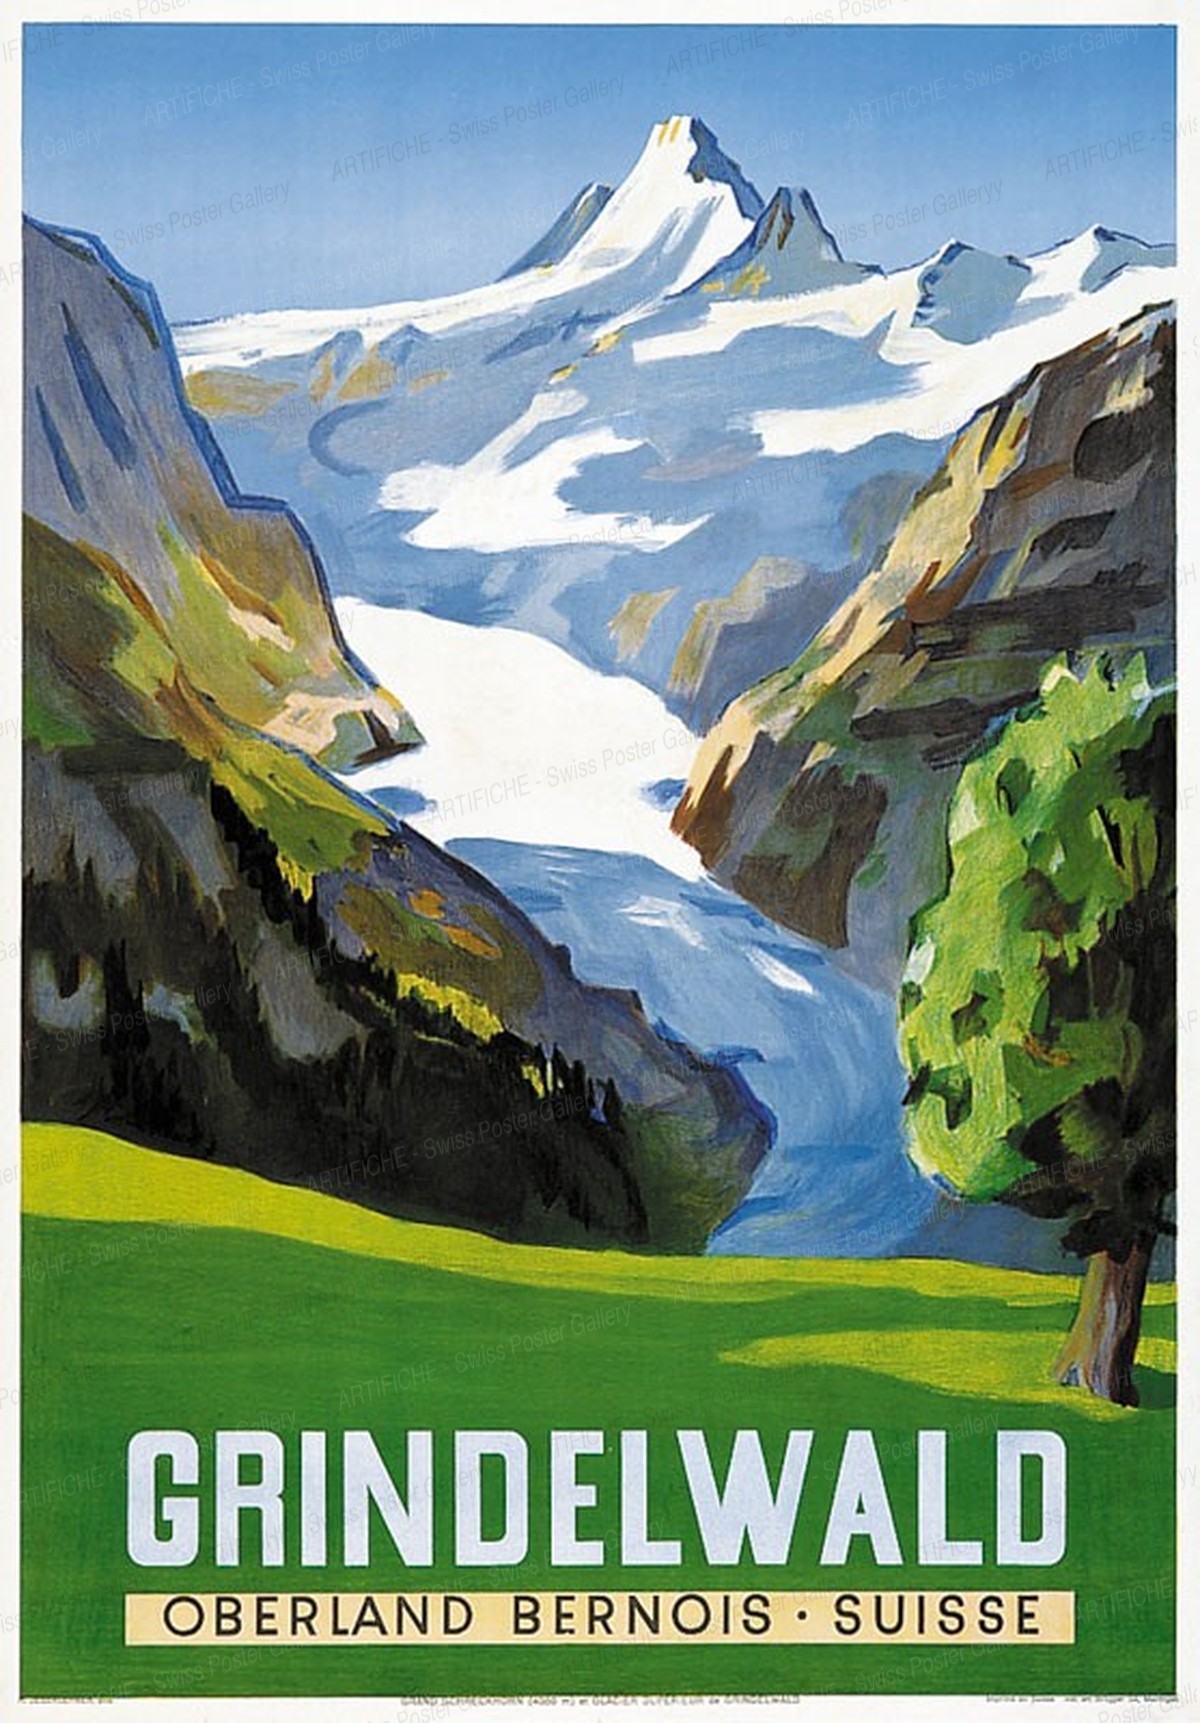 Grindelwald – Bernese Oberland, Hans Jegerlehner